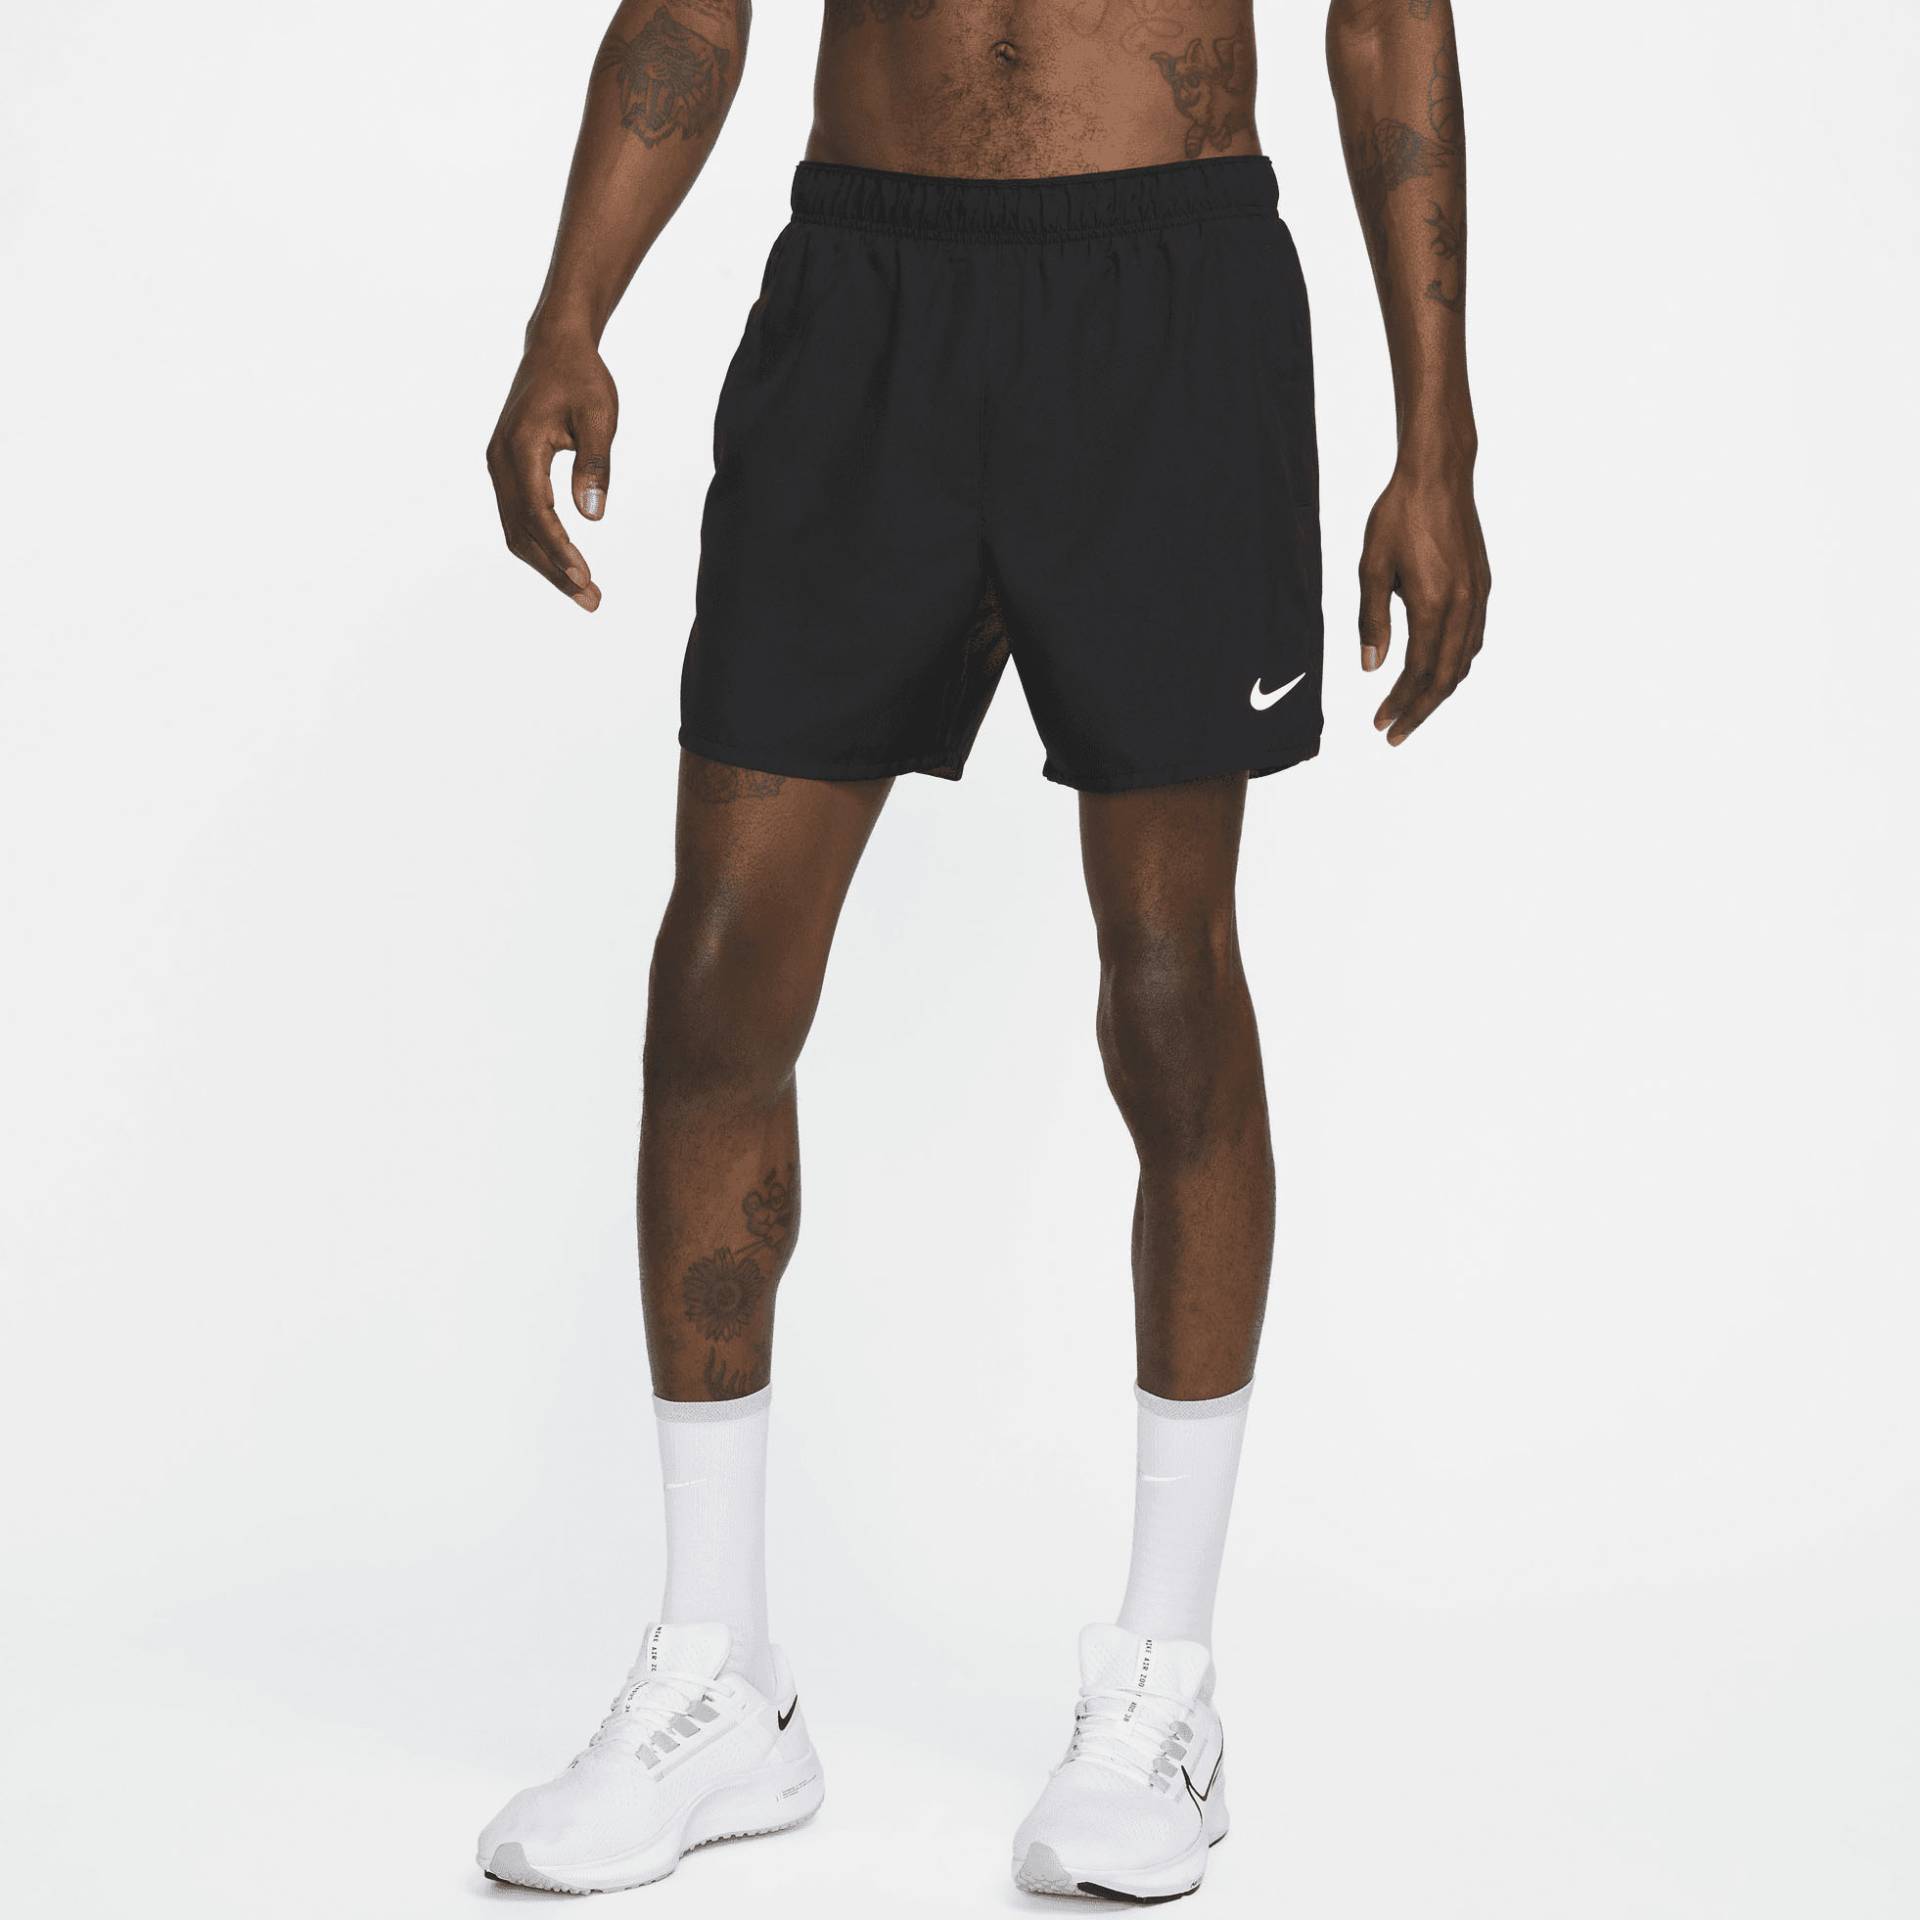 Nike Laufshorts »Dri-FIT Challenger Men's " Brief-Lined Running Shorts« von Nike